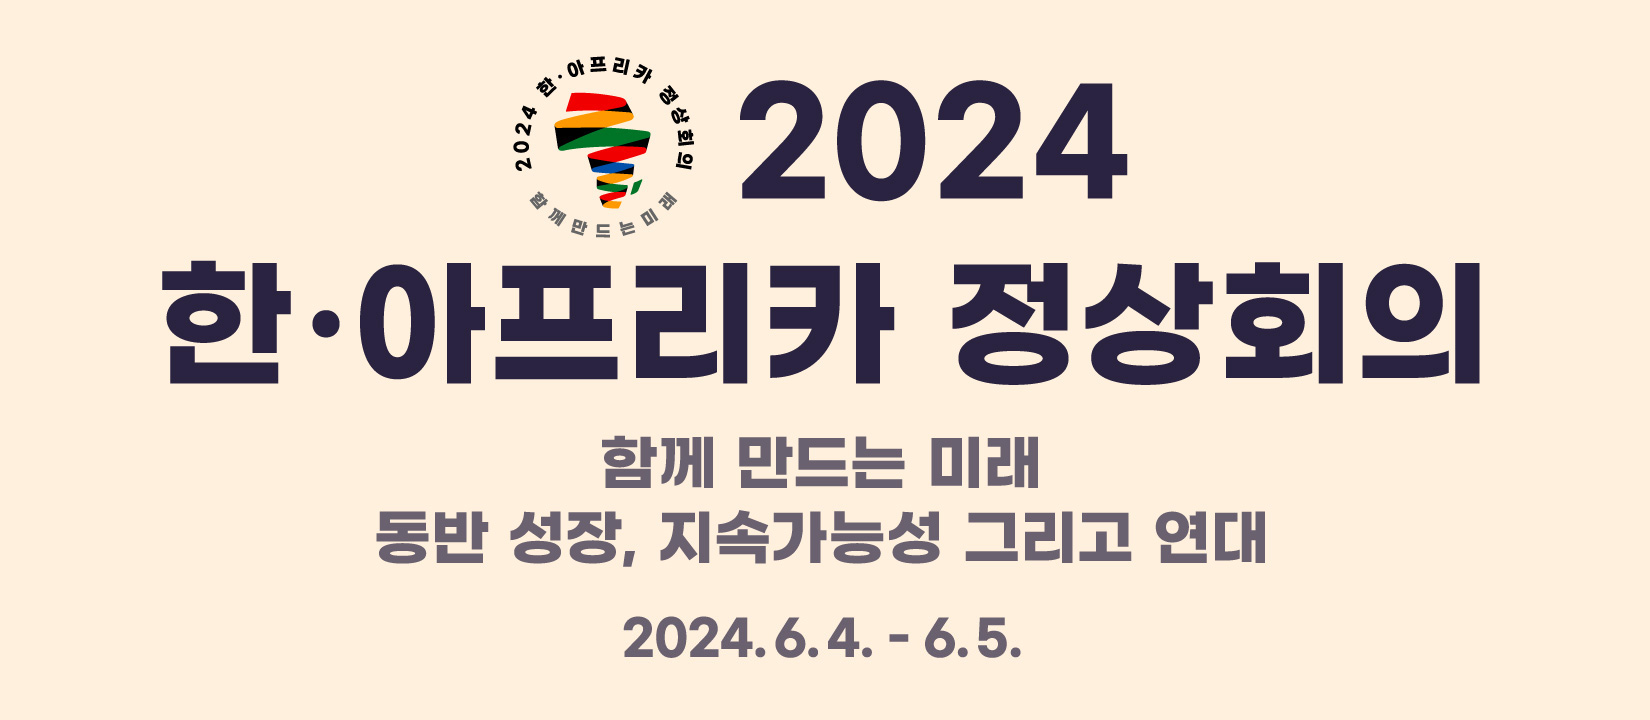 2024 한·아프리카 정상회의 | 함께 만드는 미래 동반 성장, 지속가능성 그리고 연대,
2024.6.4 - 6.5.